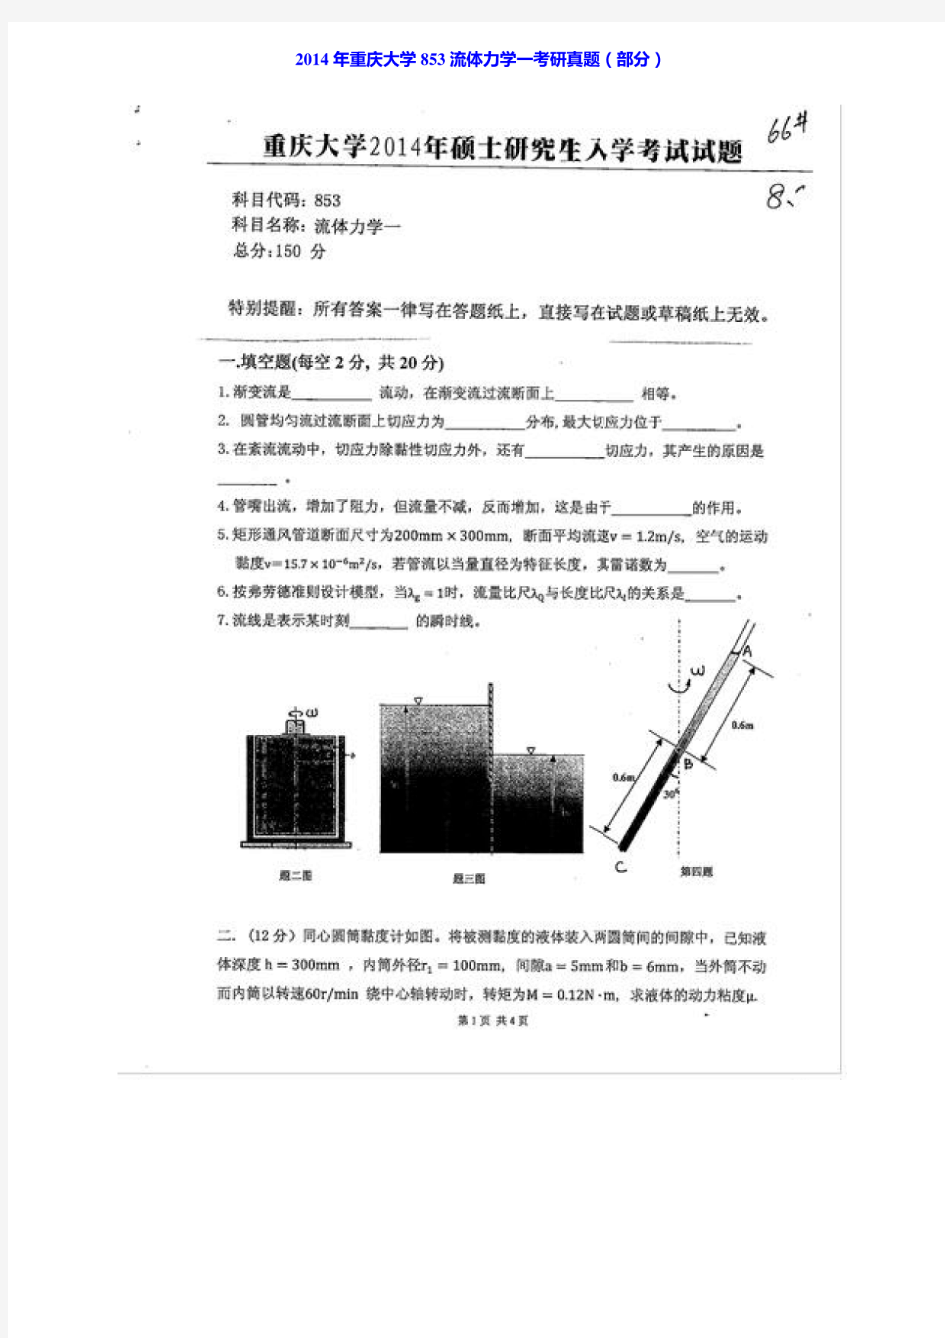 重庆大学城市建设与环境工程学院《853流体力学一》历年考研真题汇编